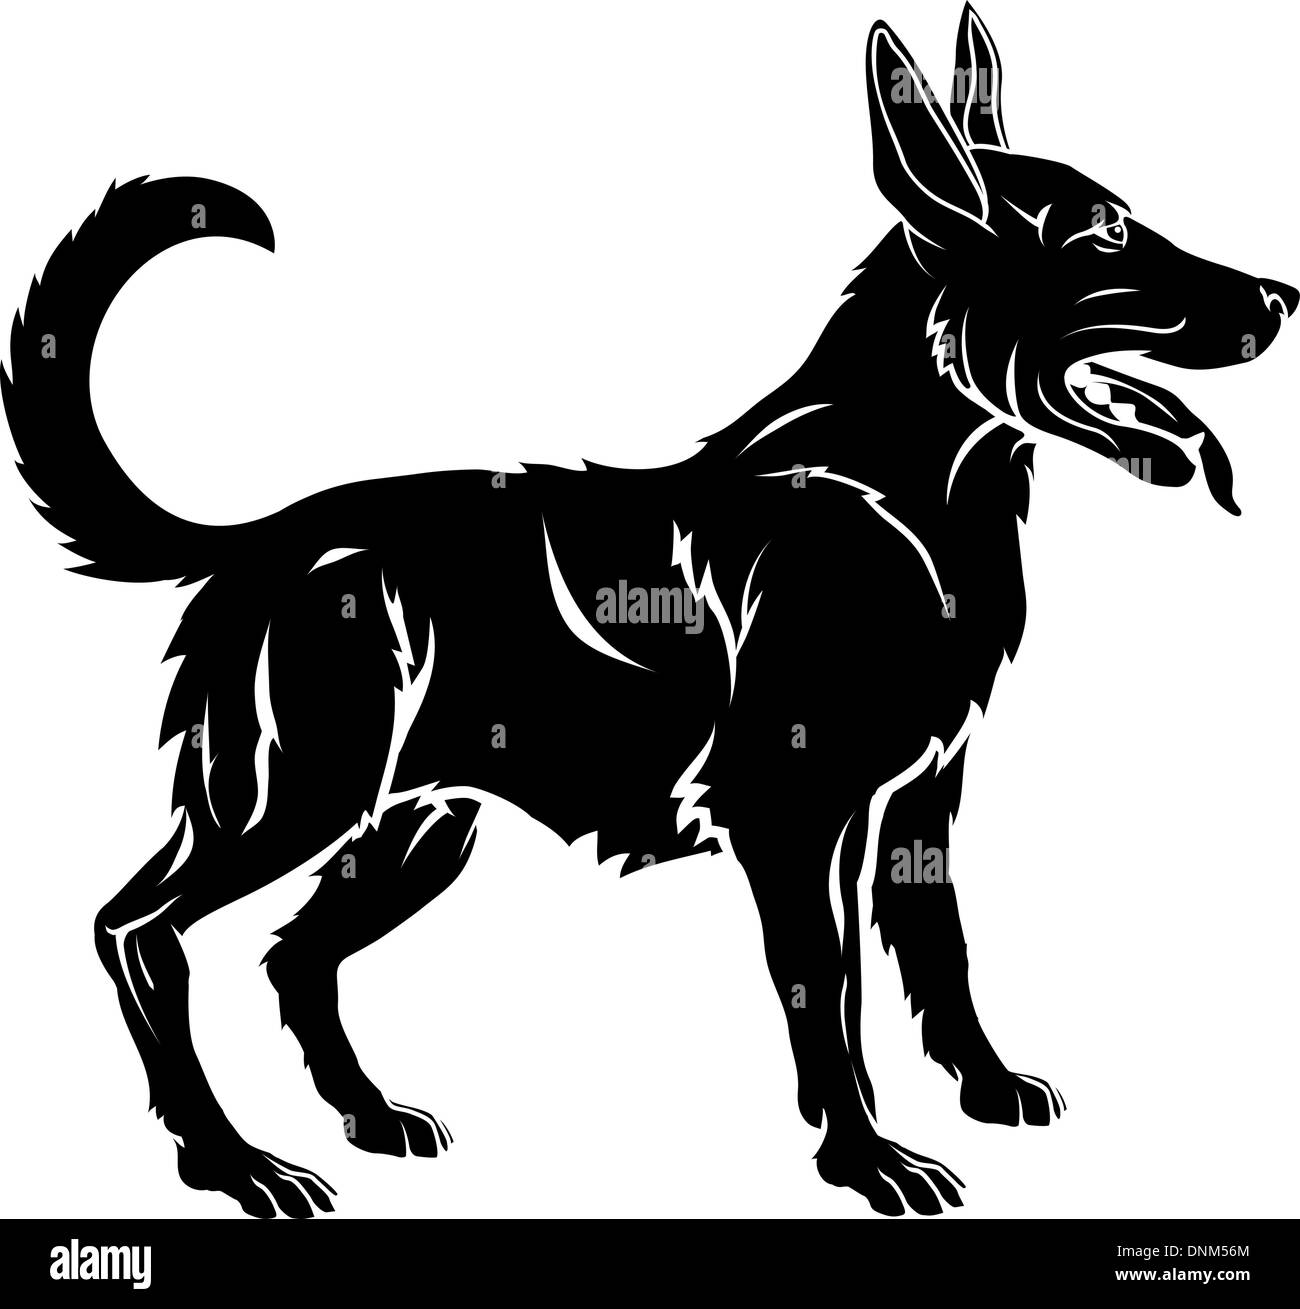 1300 Cartoon Of The Black Dog Tattoo Illustrations RoyaltyFree Vector  Graphics  Clip Art  iStock